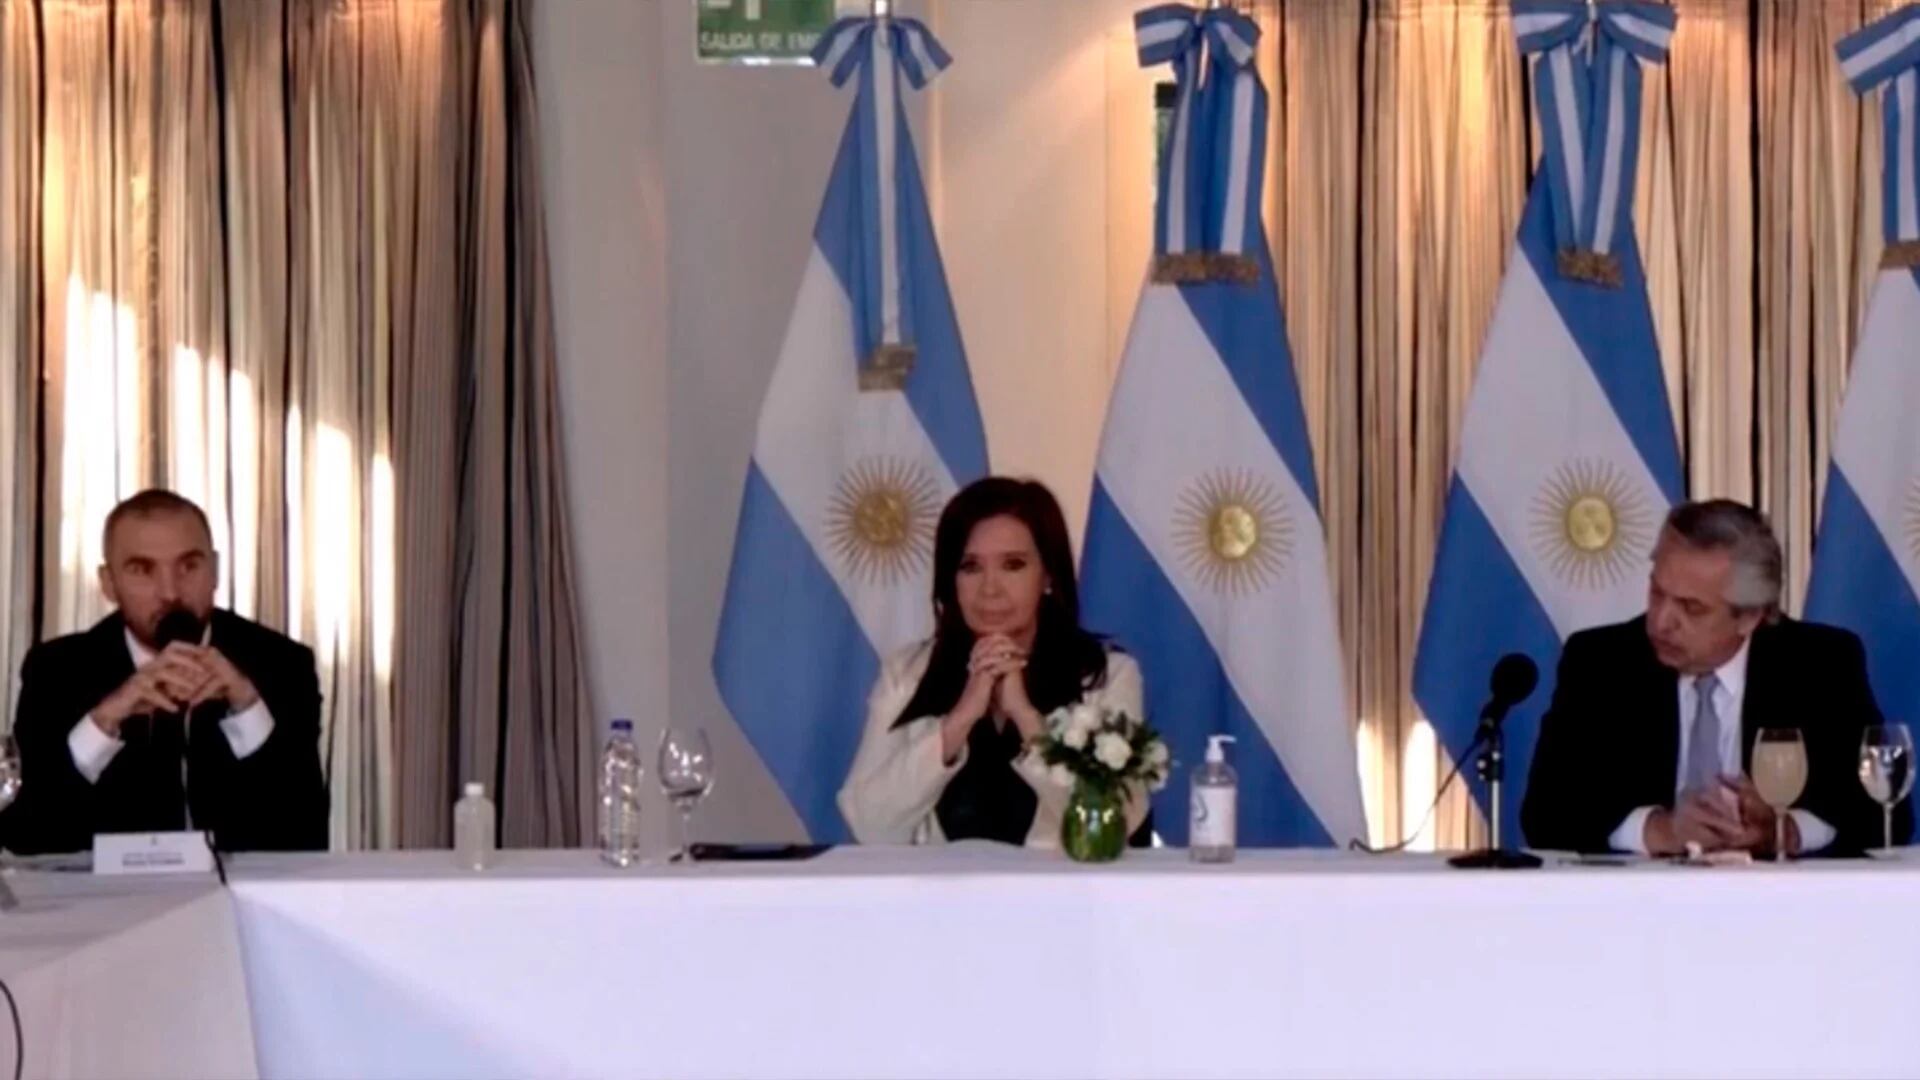 El ministro Guzmán, la vicepresidente Cristina Kirchner y el presidente Alberto Fernández, cuando el primero adelantó ante los gobernadores la oferta de restructuración que un día después presentó la Argentina